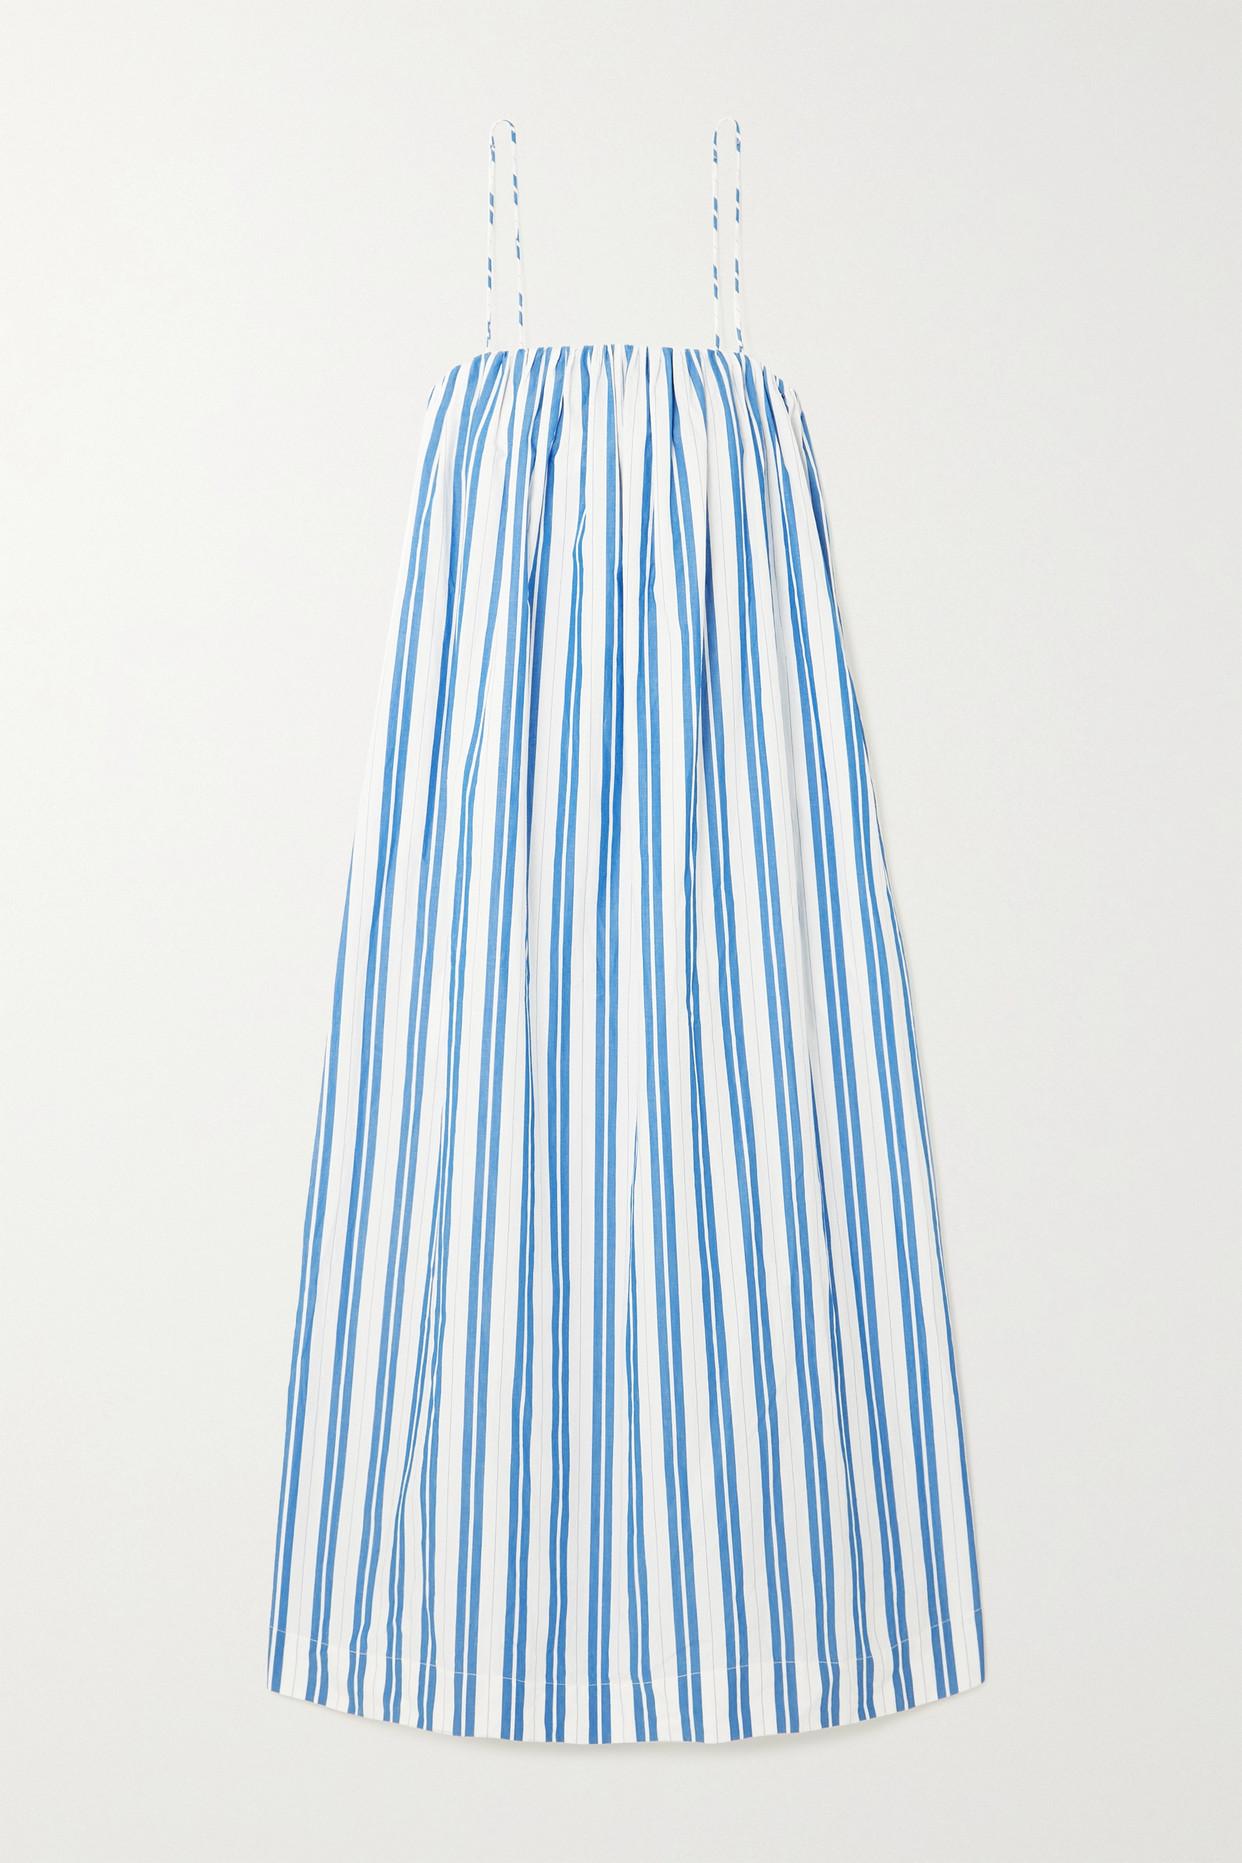 Ganni Striped Organic Cotton-poplin Maxi Dress in Blue | Lyst